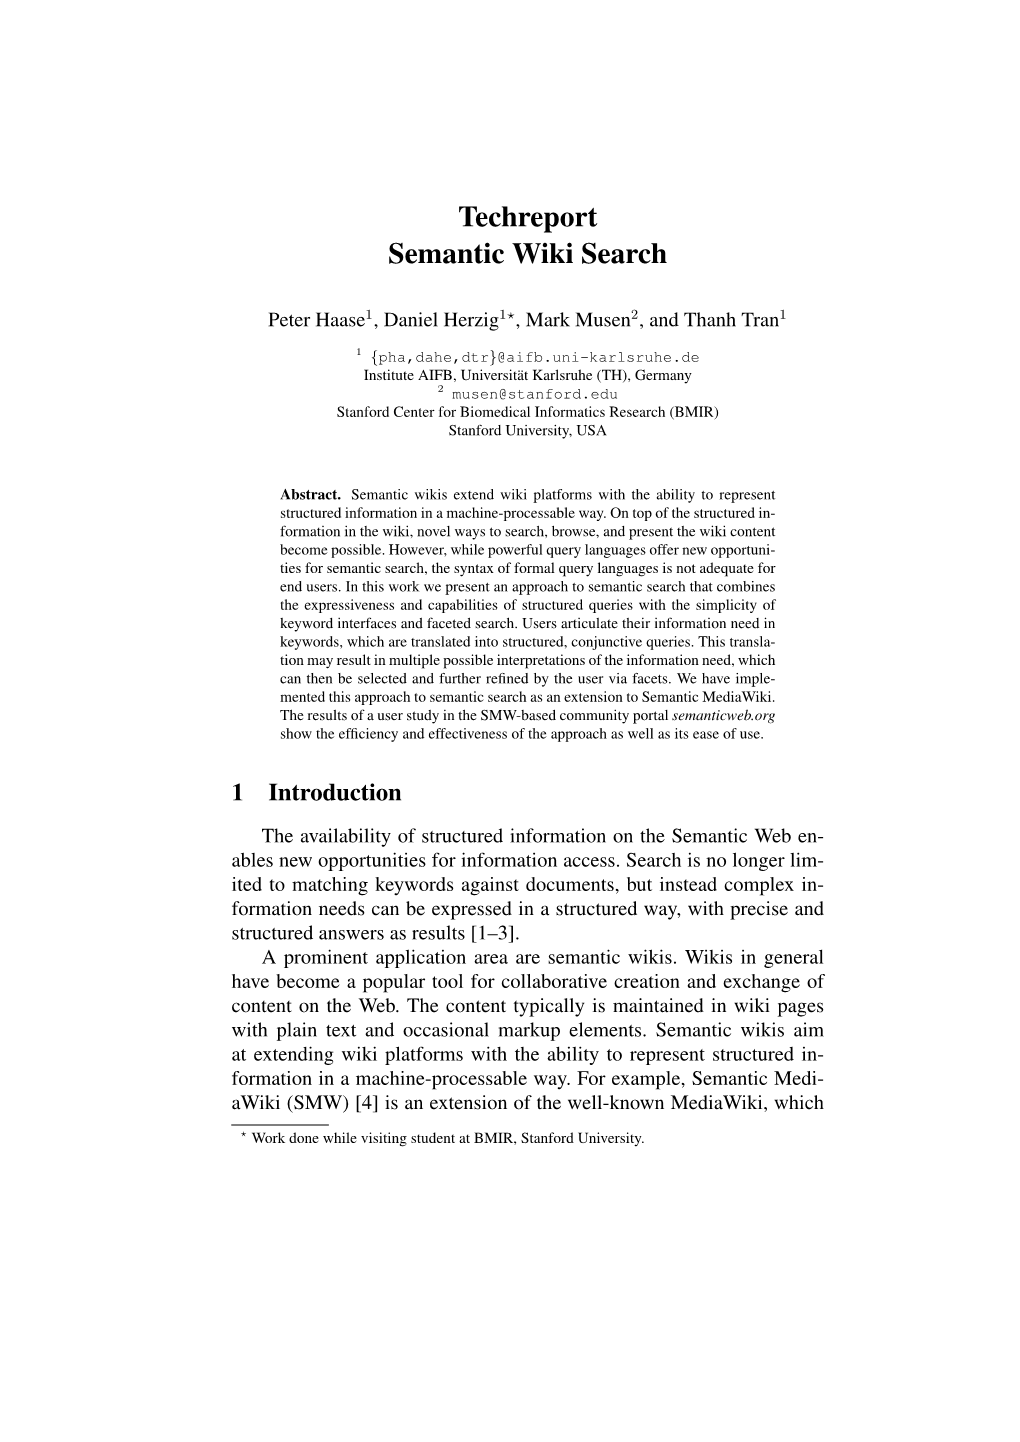 Techreport Semantic Wiki Search